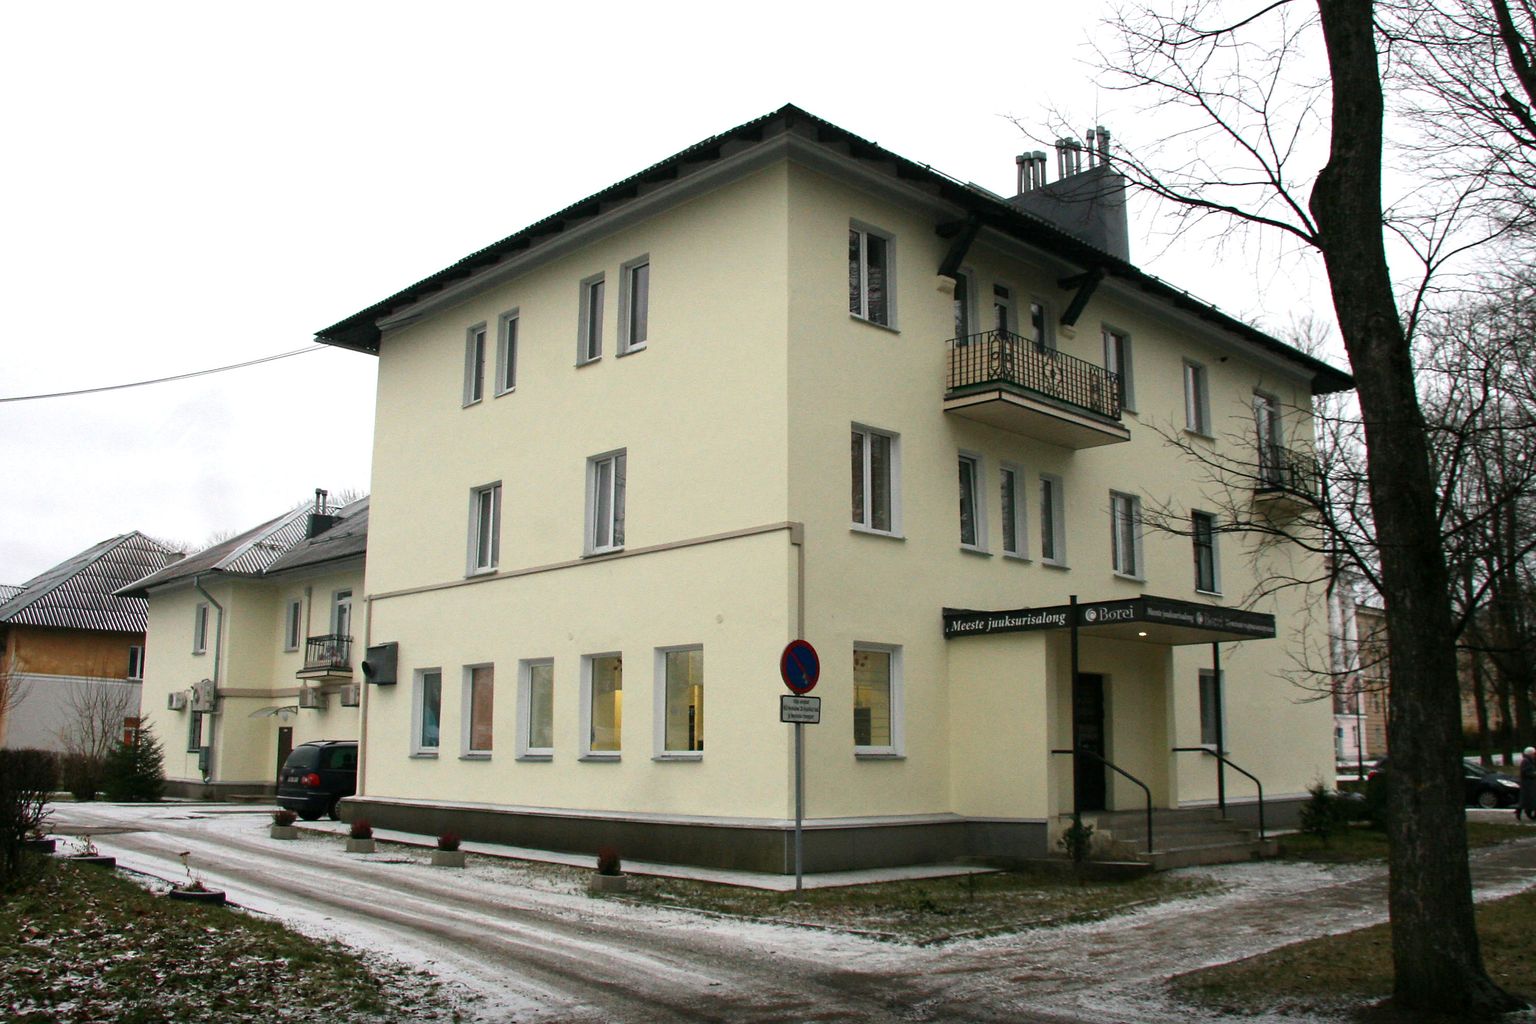 Дом на Кескаллеэ, 20 после ремонта фасада и дороги получил в ноябре самую большую поддержку от города - 7883,56 евро.